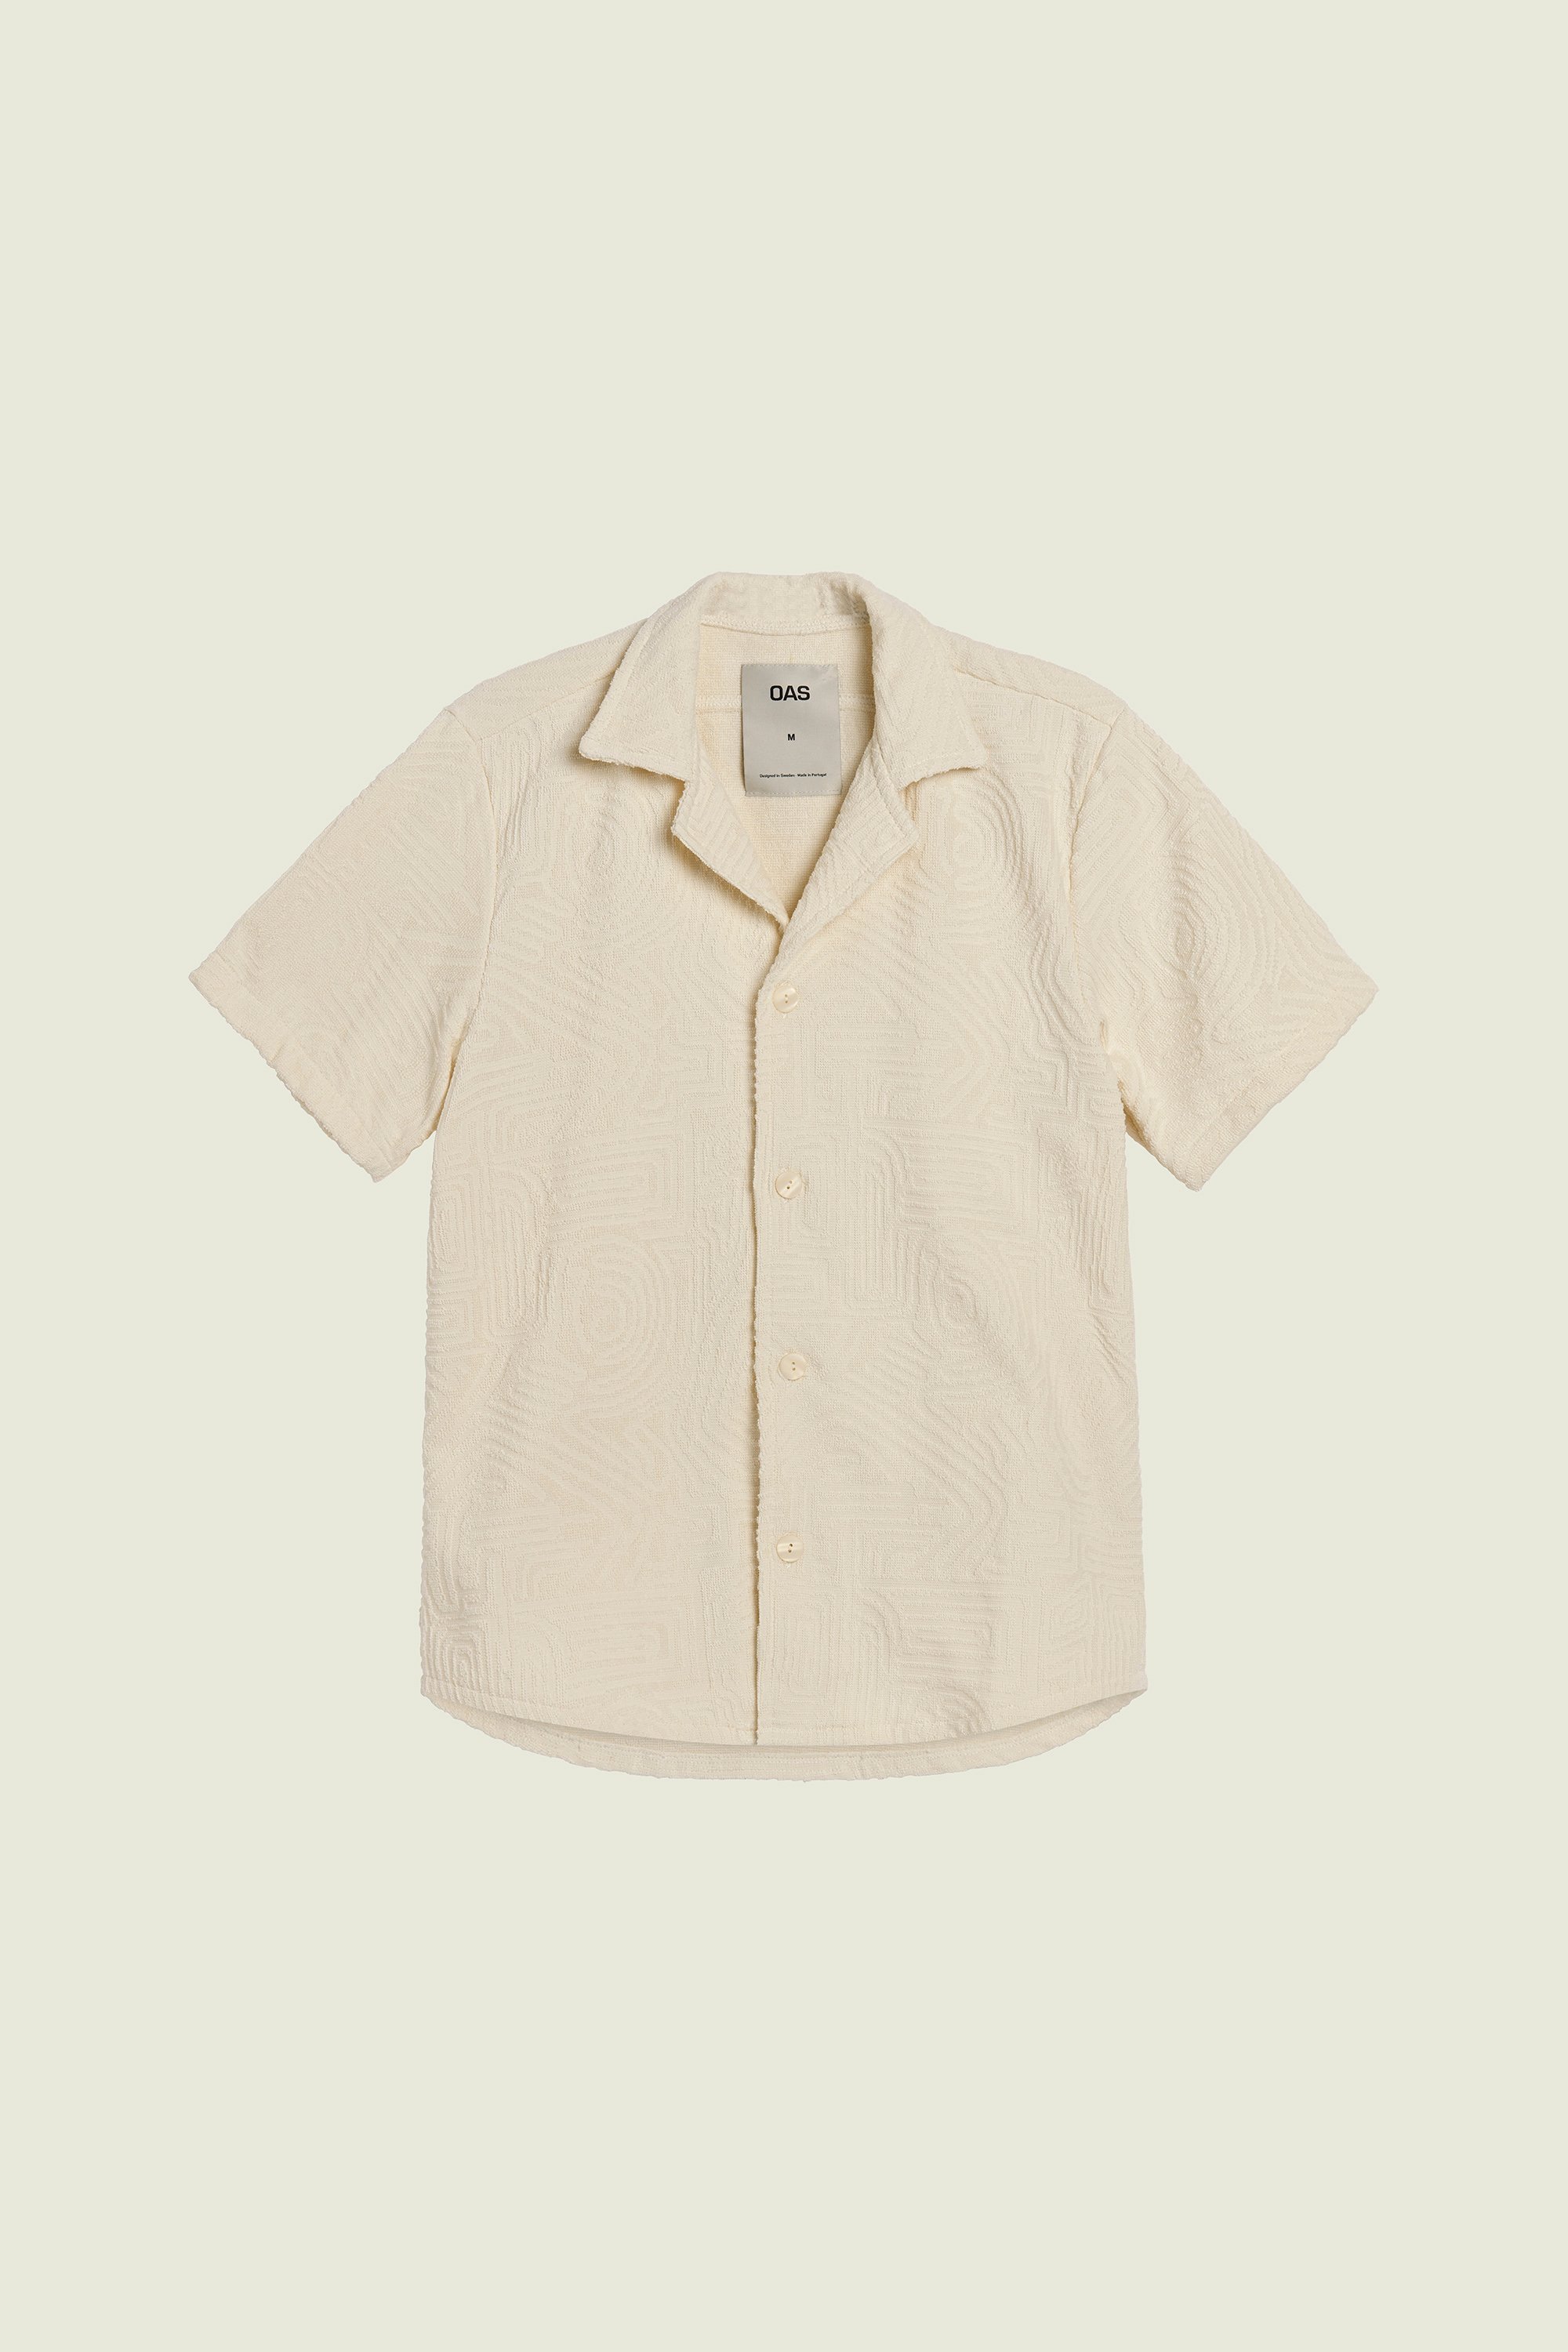 OAS Cuban Terry Shirt - Cream Golconda